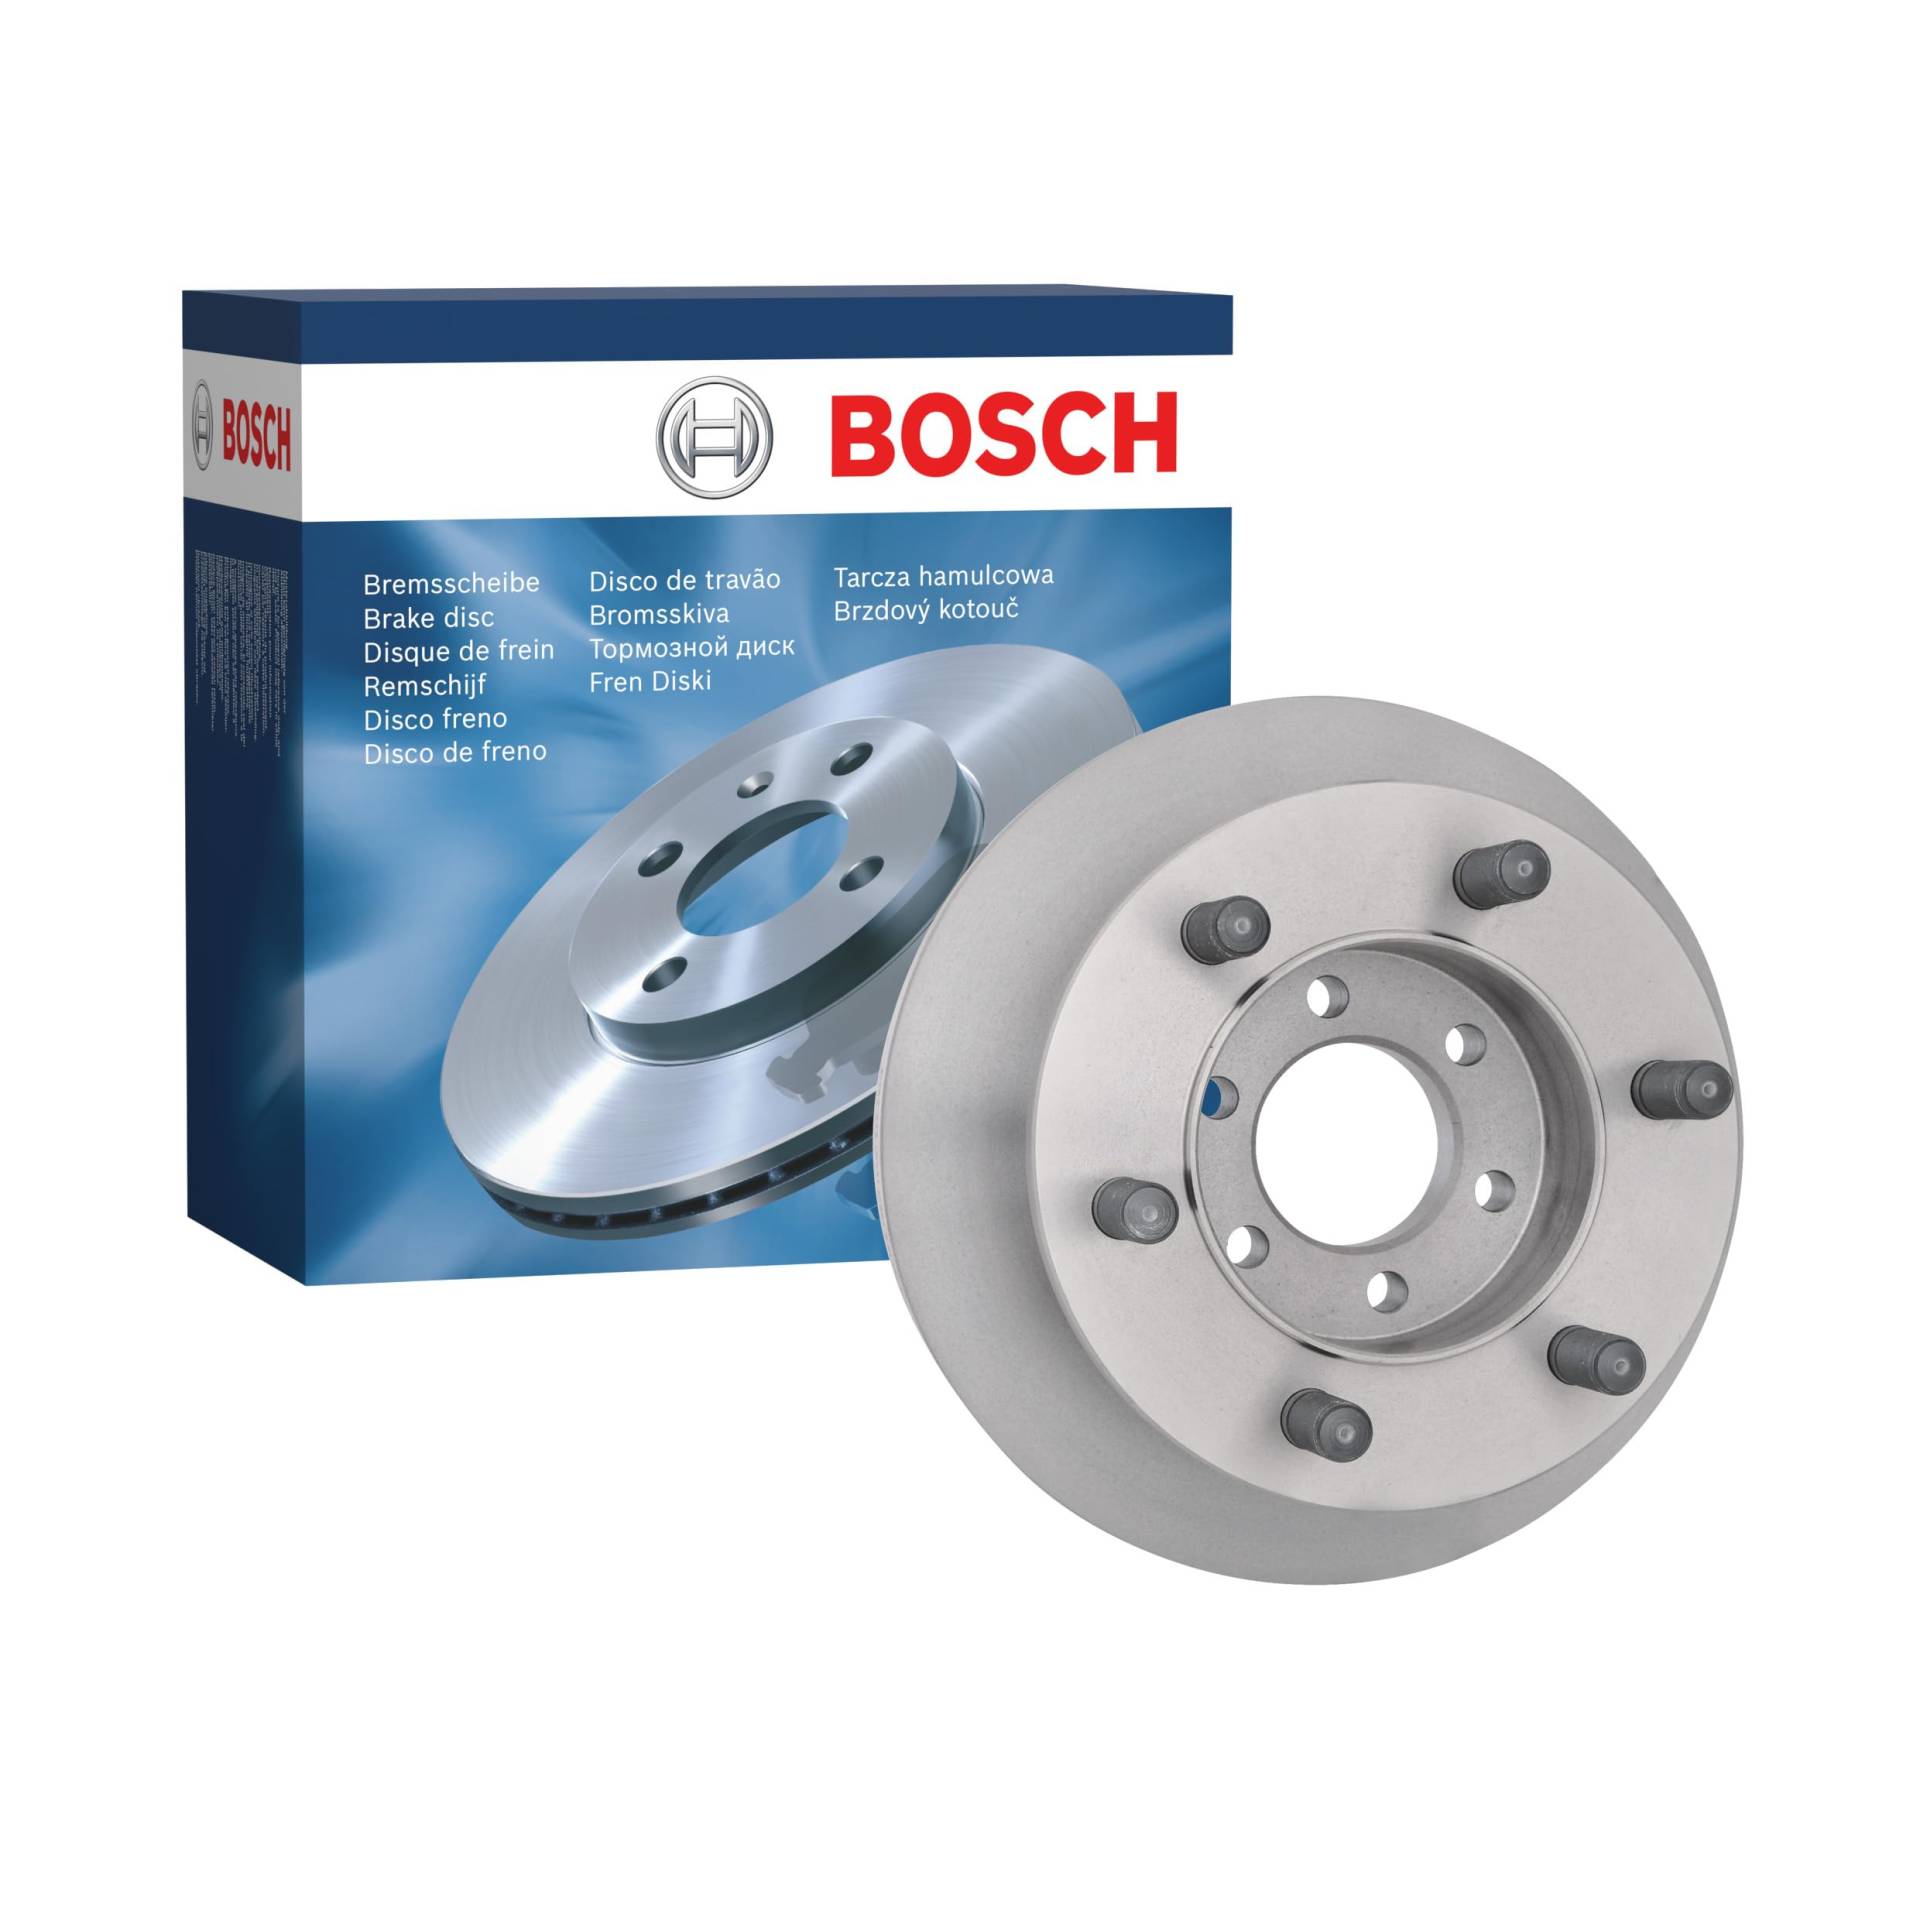 Bosch BD2332 Bremsscheiben - Vorderachse - ECE-R90 Zertifizierung - eine Bremsscheibe von Bosch Automotive